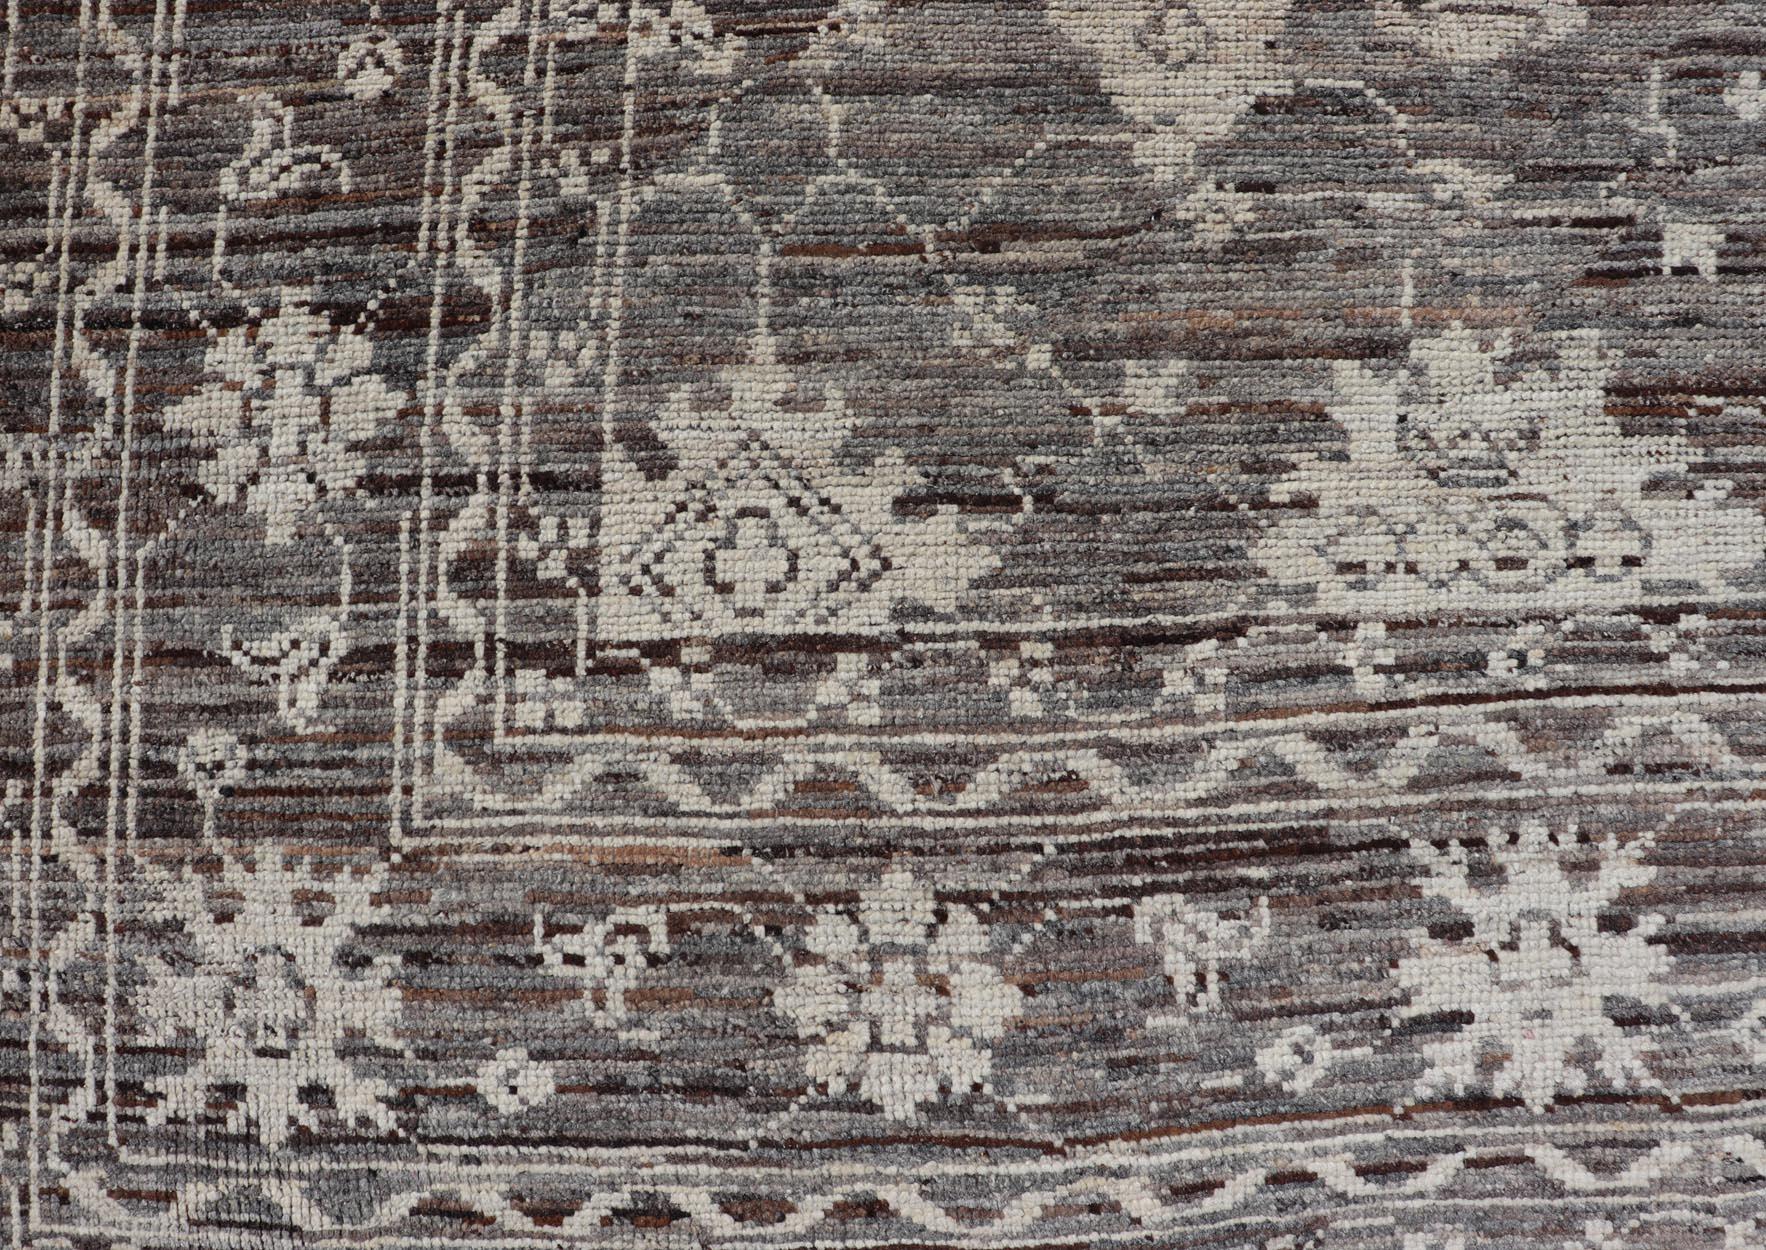 Dieser moderne, legere Teppich ist handgeknüpft. Der Teppich zeichnet sich durch ein modernes, subgeometrisches Oushak-Design mit verschiedenen Motiven aus, das in erdigen und neutralen Tönen gehalten ist. Dadurch passt dieser Teppich hervorragend